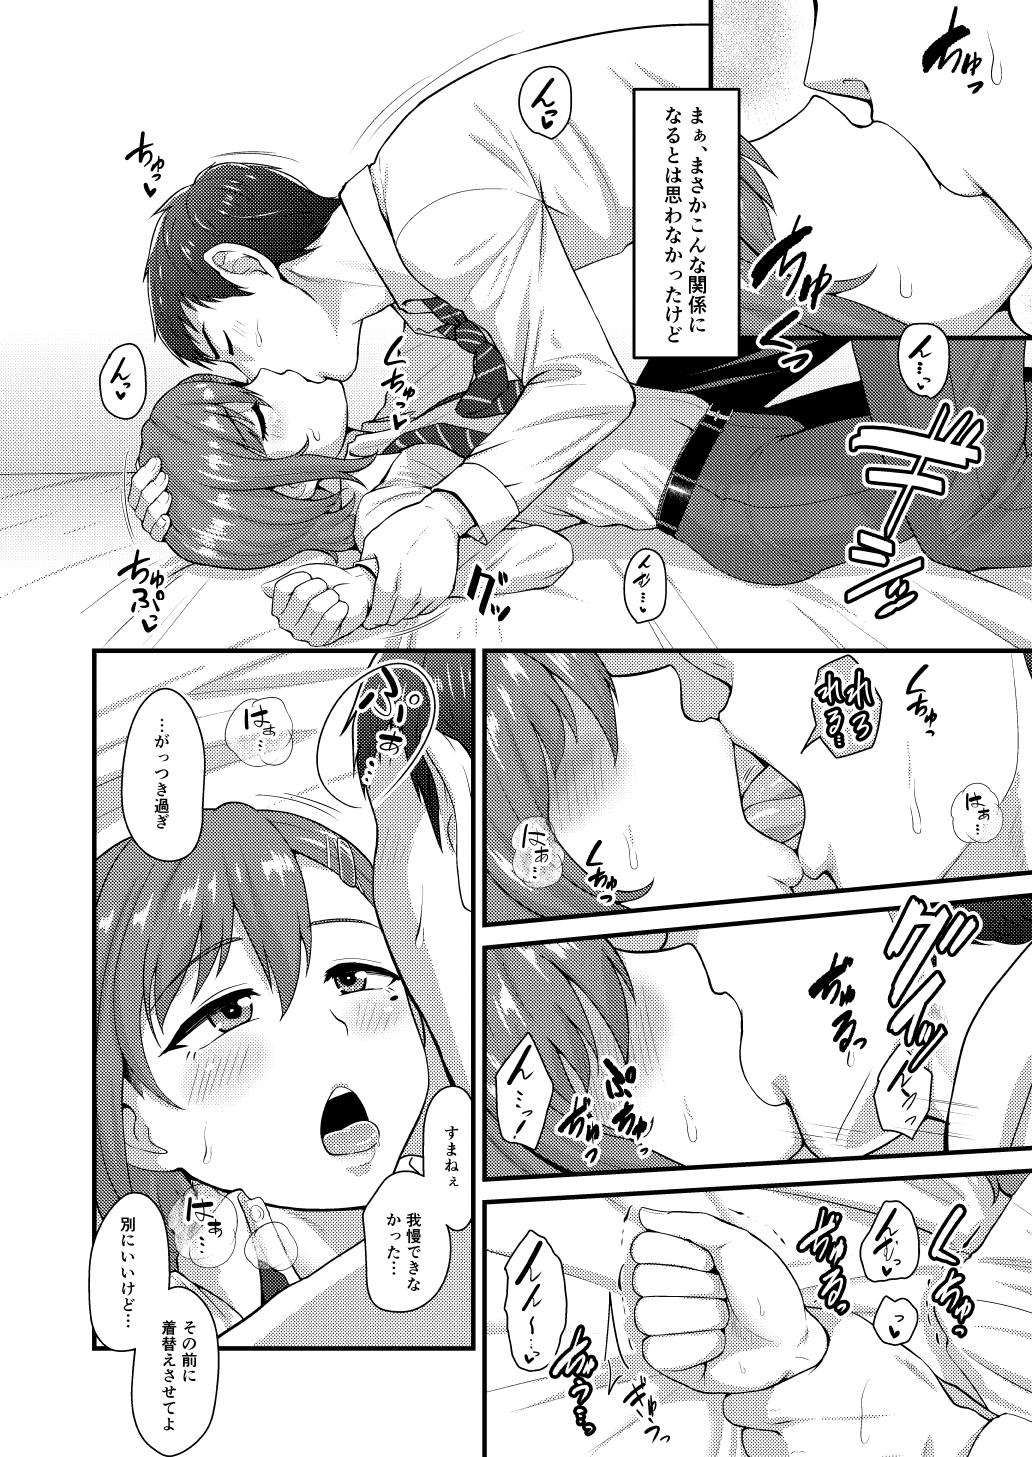 Atm Aitsu no Toriko ni Natta Boku. Fuyu Girls Getting Fucked - Page 7